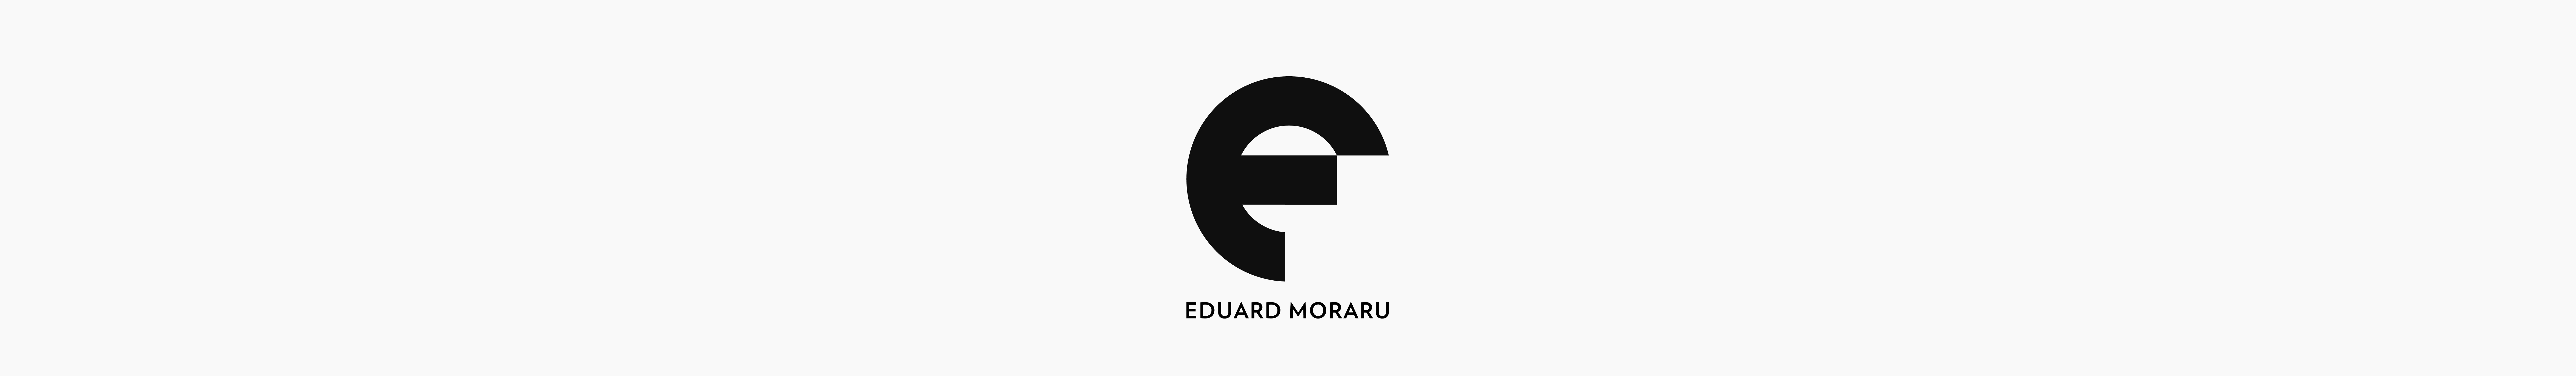 Eduard Moraru 的个人资料横幅